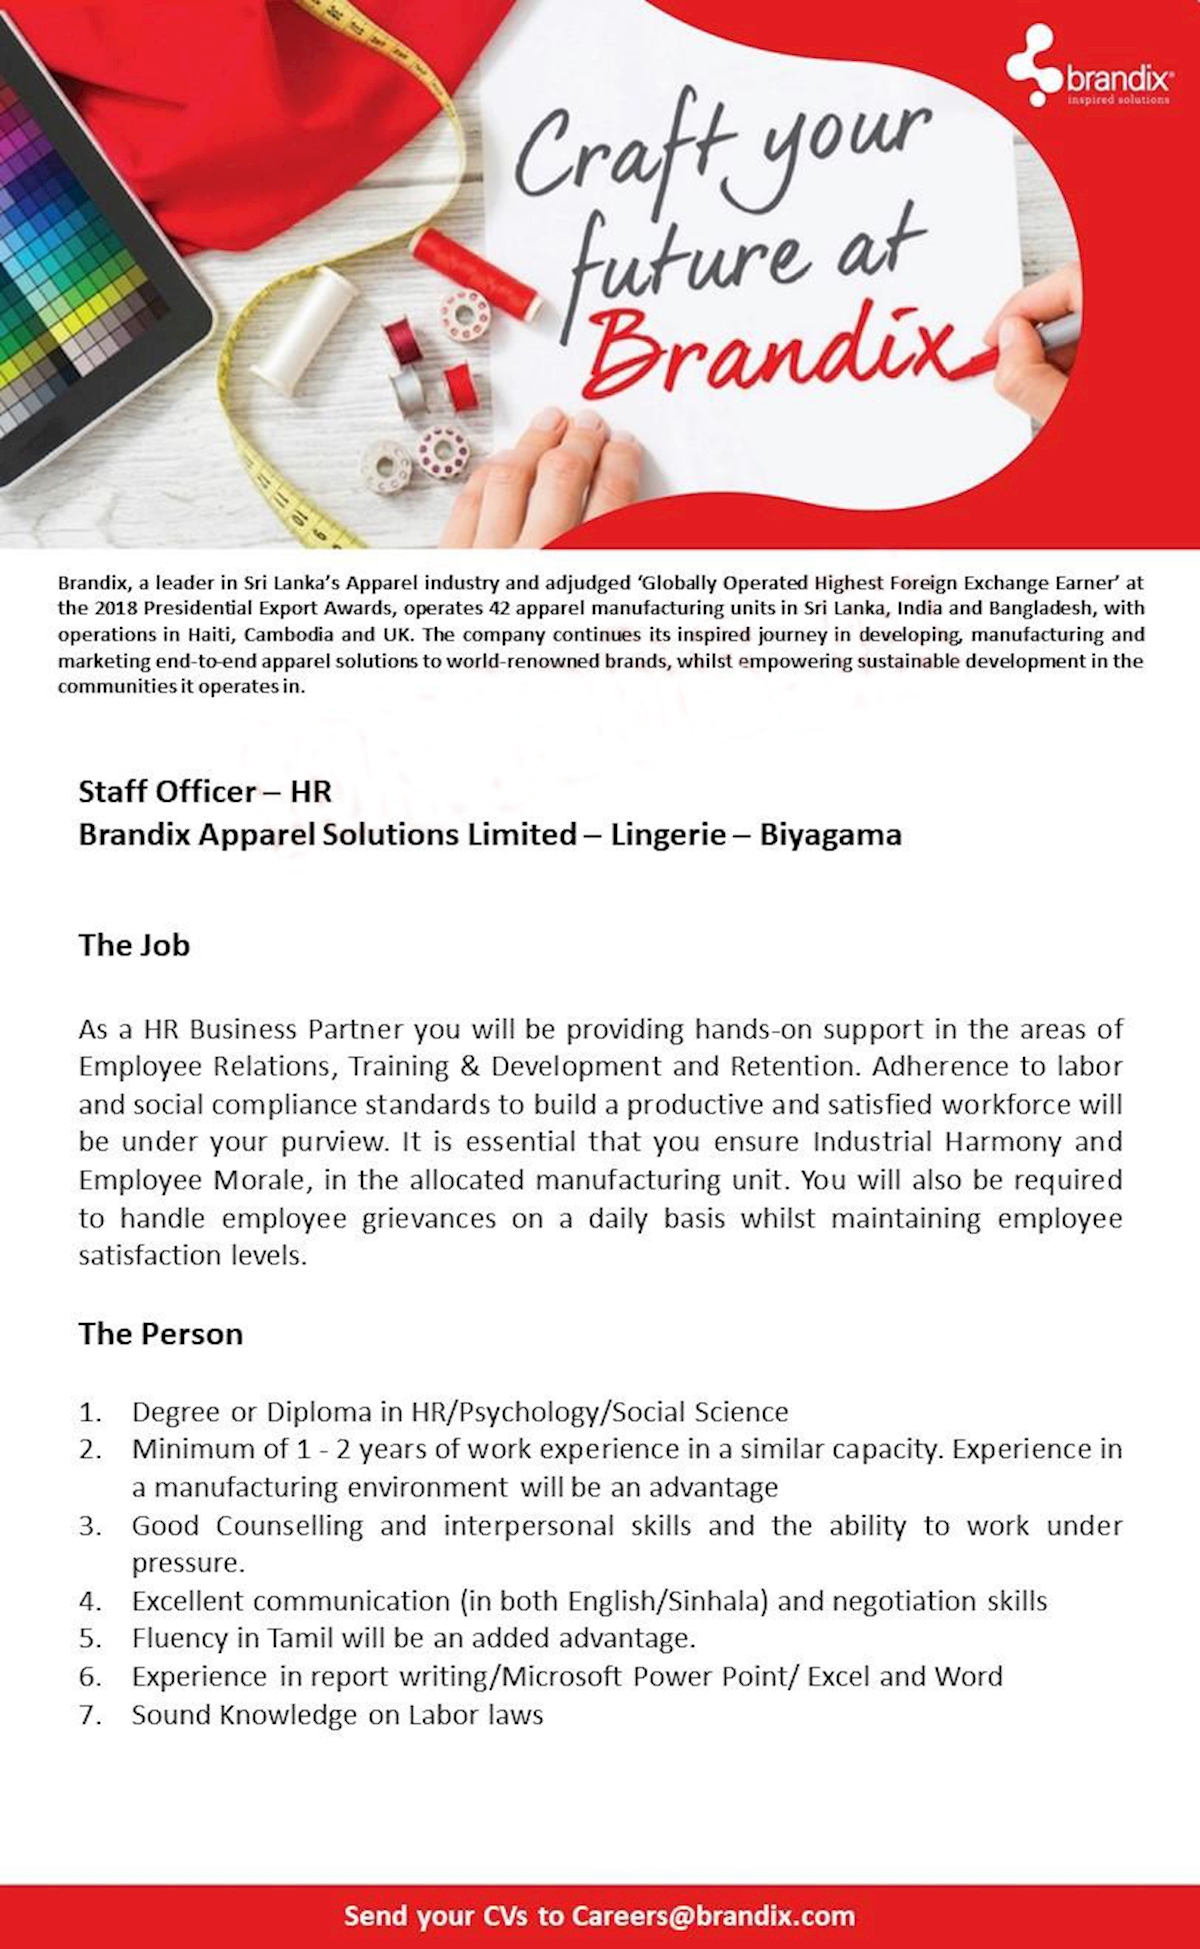 Staff Officer - HR